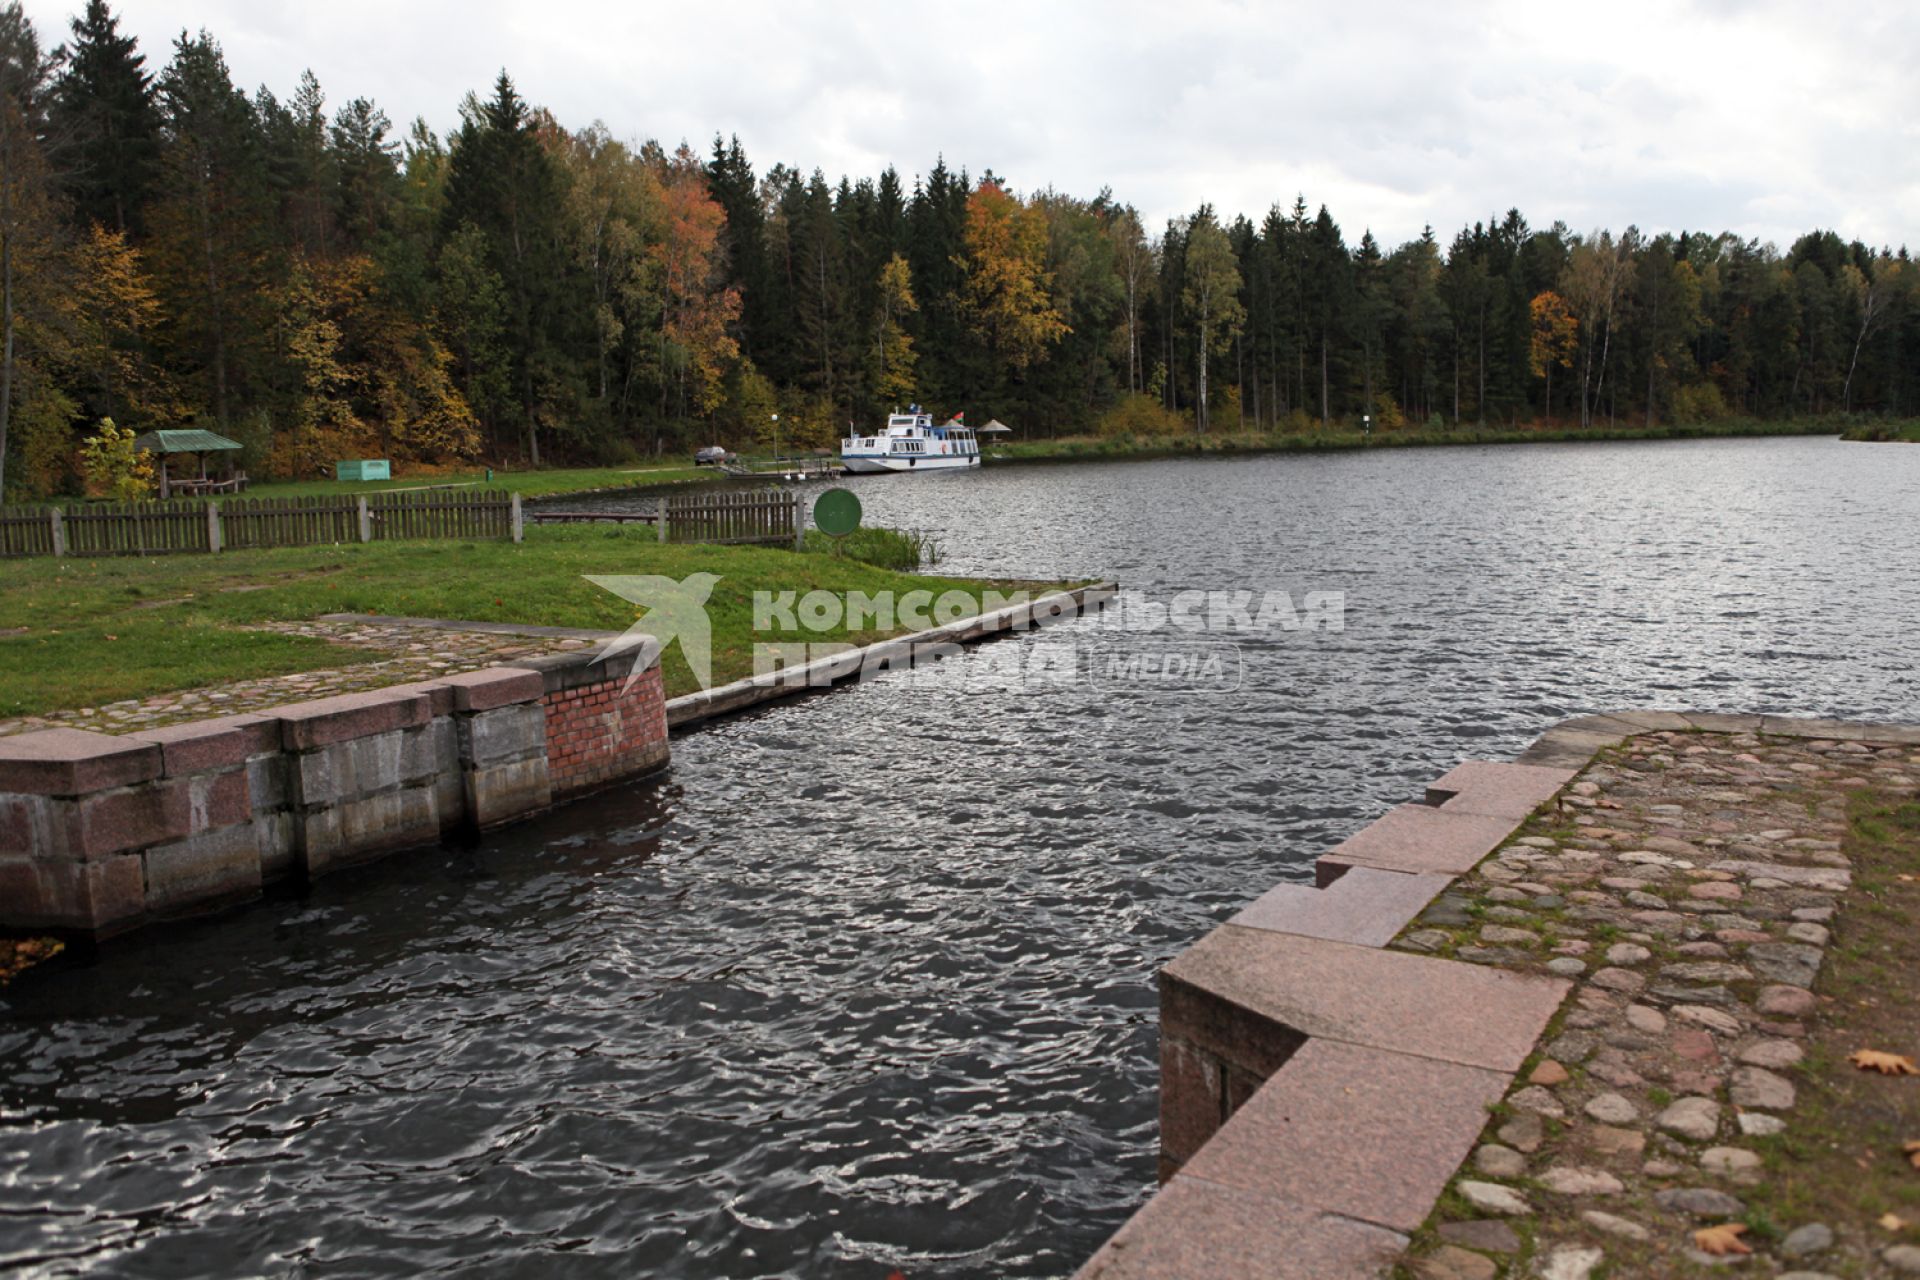 Белоруссия, Гродненская область. Августовский канал, проходящий по территории Польши и Белоруссии, соединяет реки Вислу и Неман.